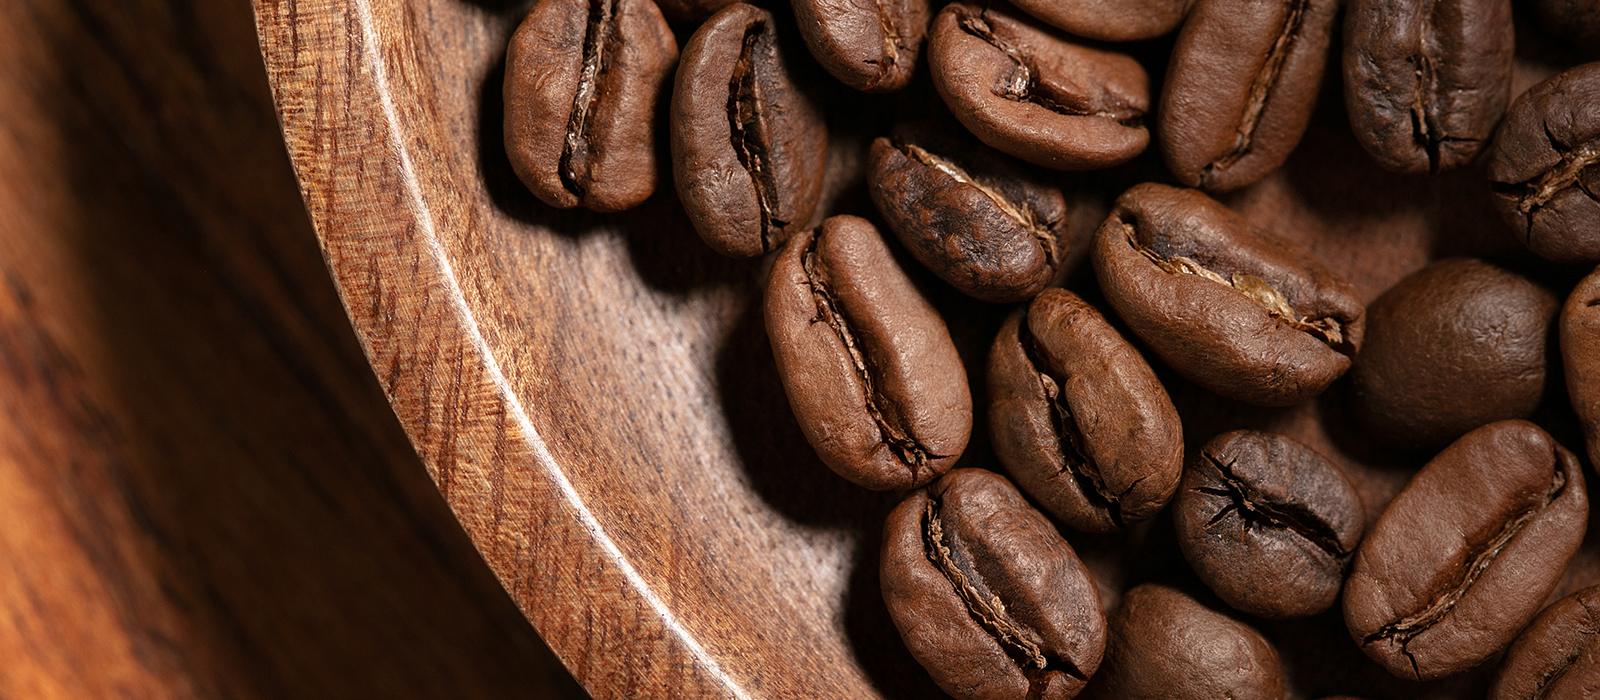 بهترین نوع قهوه عربیکا چیست؟